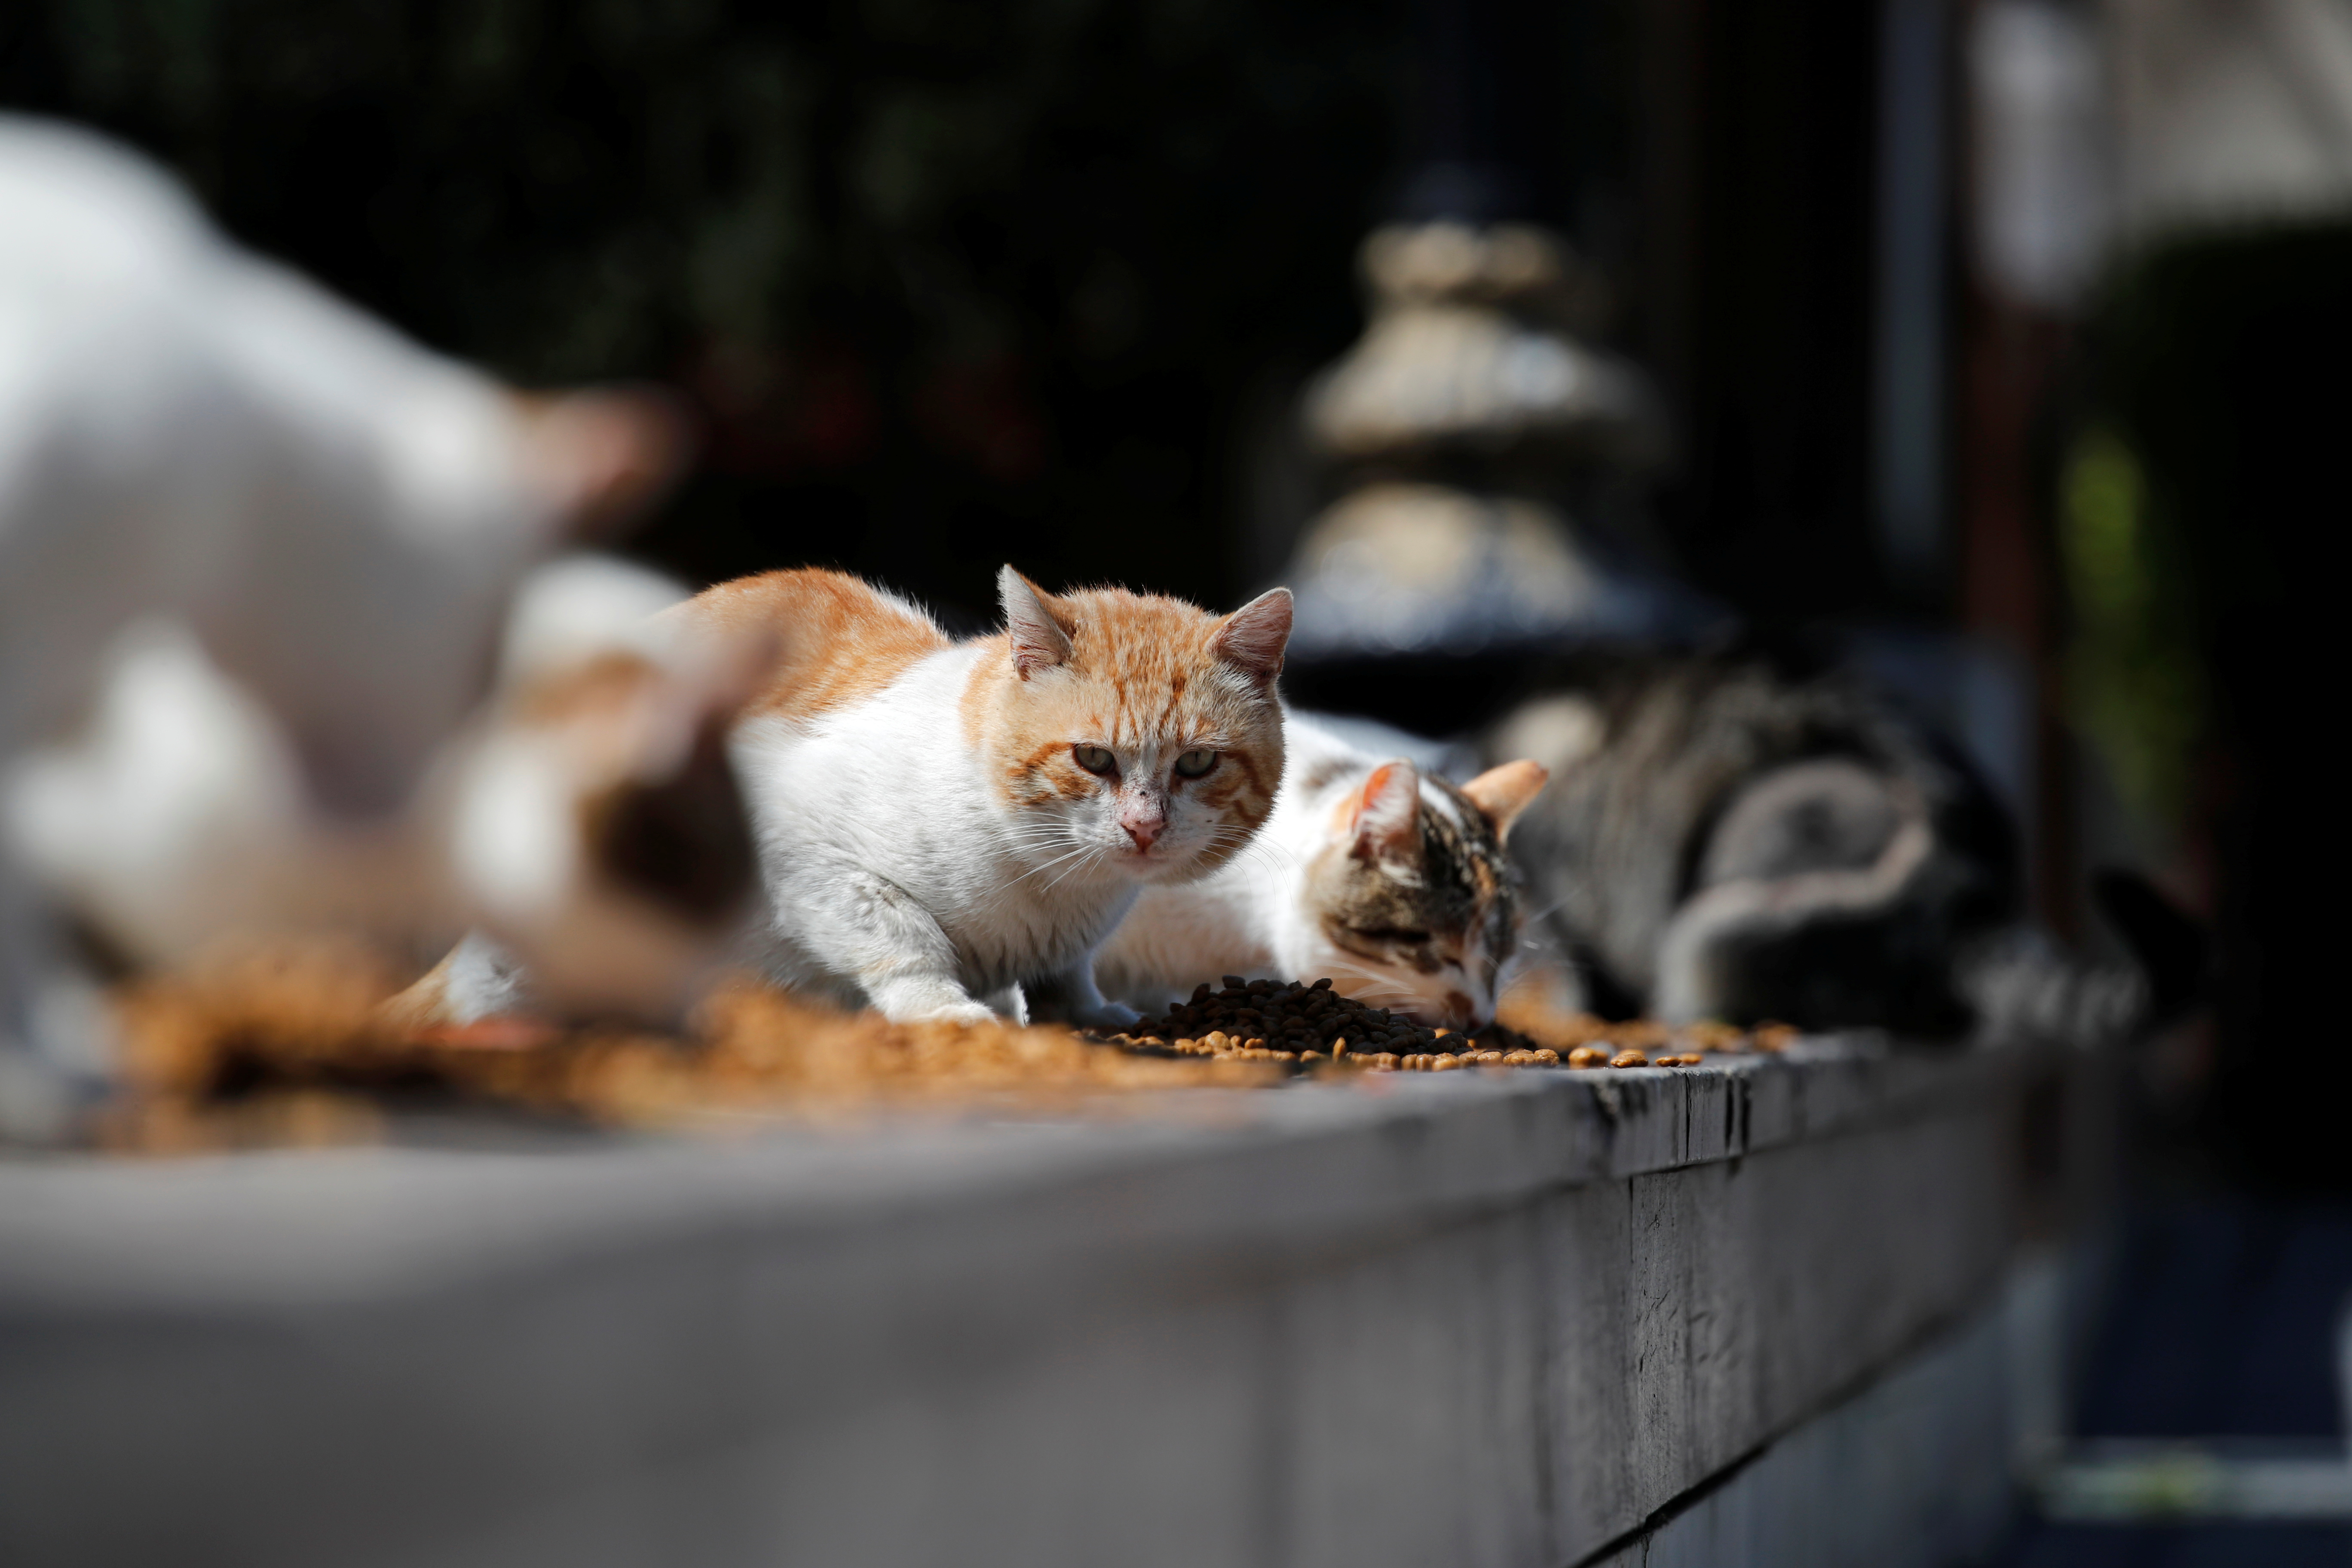 Según los firmantes del escrito, el nuevo anteproyecto de Ley presta especial atención a las colonias de gatos, es decir, grupos de gatos sin dueño que se mantienen gracias al aporte continuado de comida y otros cuidados (REUTERS)